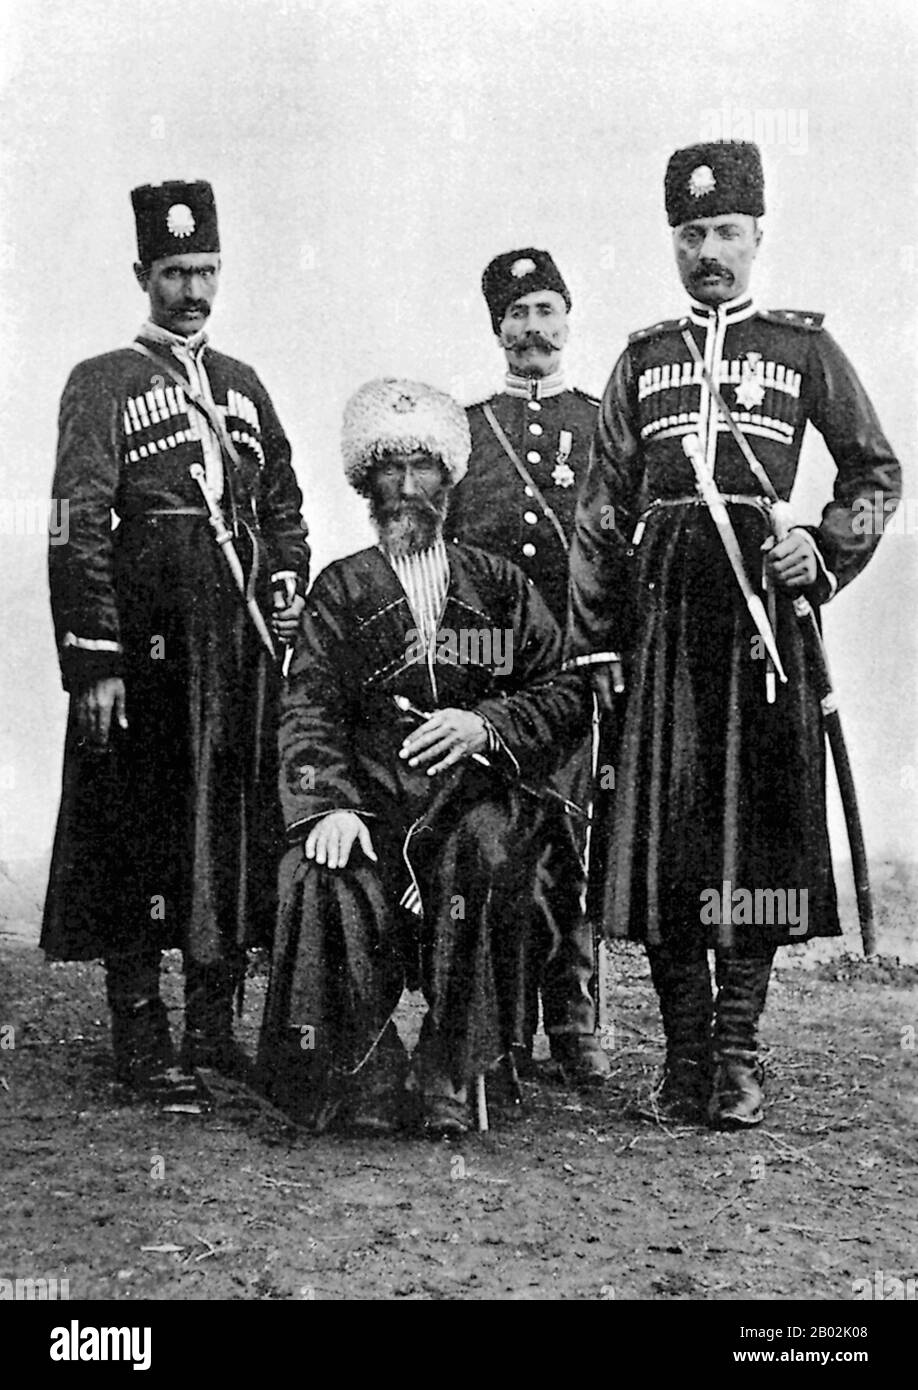 Das Hamidiye-Corps, vollständiger offizieller Name Hamidiye hafif süvari alayları, Hamidiye Light Cavalry Regimenter, war gut bewaffnet, irregulär sunnitisch kurdisch, türkisch, turkmenisch und Yörük, auch arabische Kavalleristen, die in den östlichen Provinzen des Osmanenreiches operierten. Gegründet von und benannt nach Sultan Abdul Hamid II. Im Jahr 1891, sollten sie den russischen Kosaken nachempfunden werden und sollen angeblich die russisch-osmanische Grenze patrouillieren. Die Hamidiye wurden jedoch häufiger von den osmanischen Behörden verwendet, um Armenier, die im türkischen Armenien leben, zu belästigen und zu übergreifen. Eine große Rolle in Stockfoto